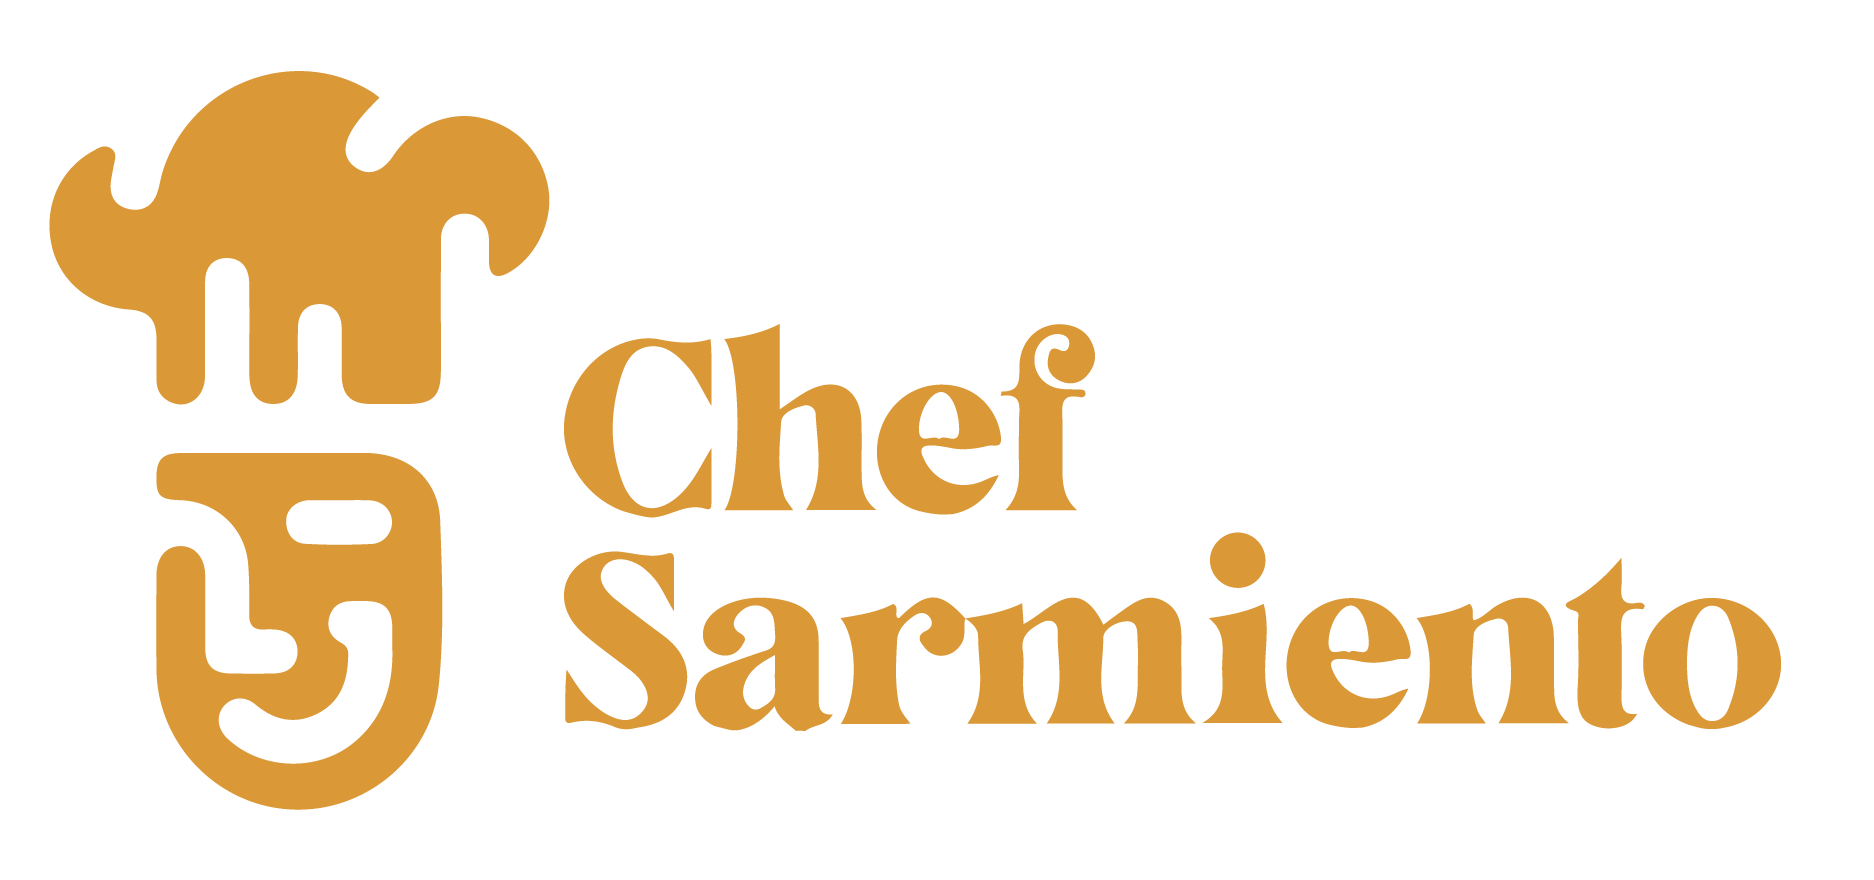 Chef Sarmiento - Catering para eventos corporativos, cata de vinos, desayunos, almuerzos, brunch, snacks y refrigerios en Bogotá y la sabana